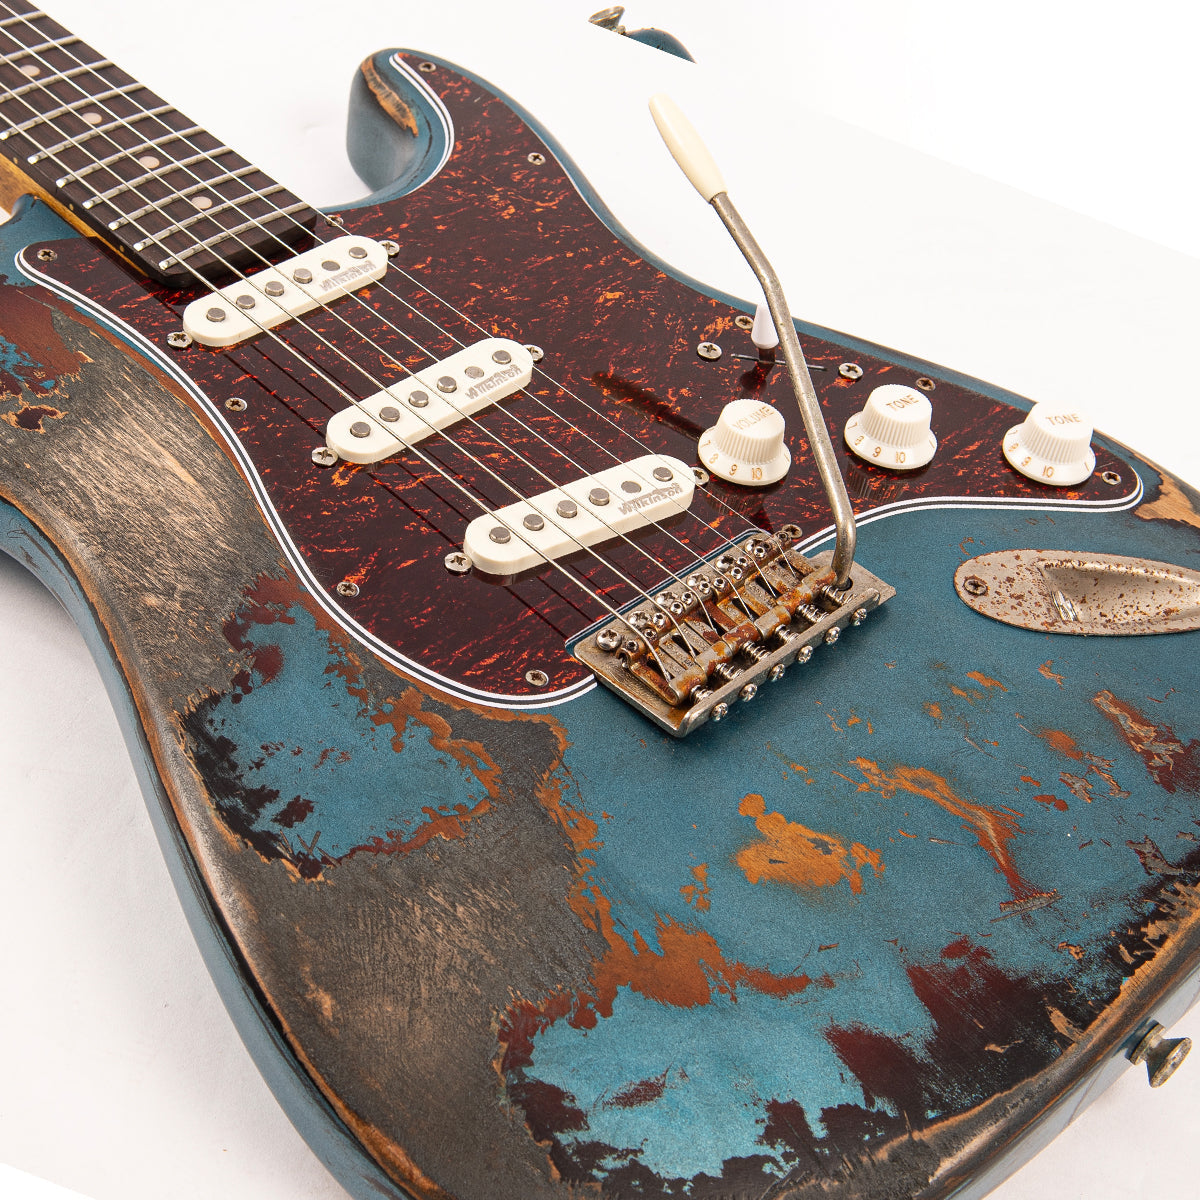 Vintage V6 ProShop Custom-Build ~ Scorched Earth Blue (Contact: Richards Guitars. www.rguitars.co.uk), Electric Guitars for sale at Richards Guitars.